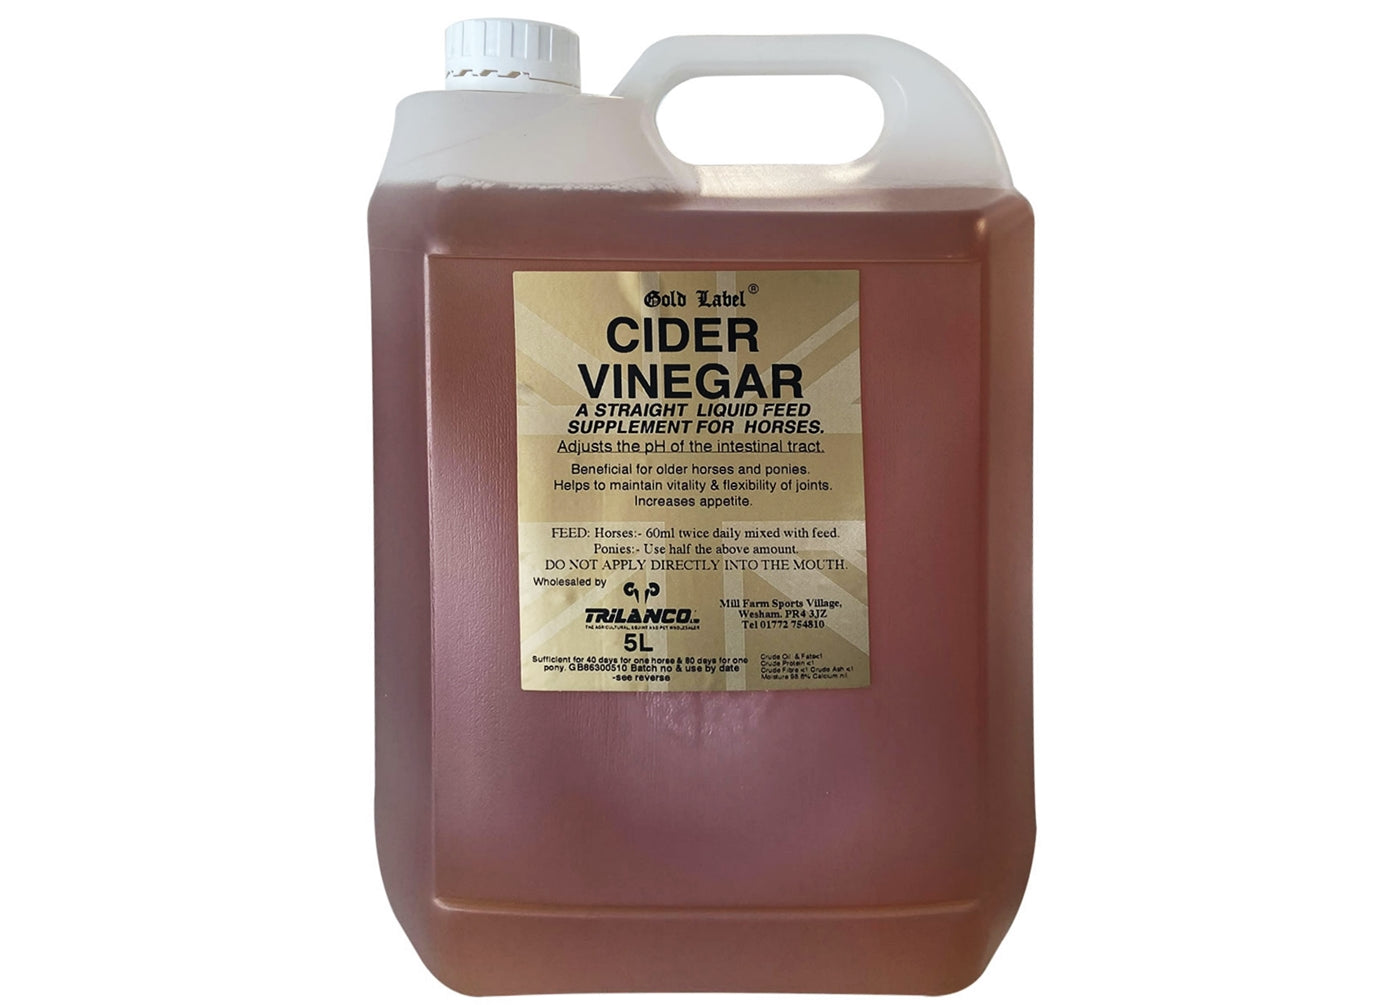 Gold Label - Cider Vinegar - Buy Online SPR Centre UK